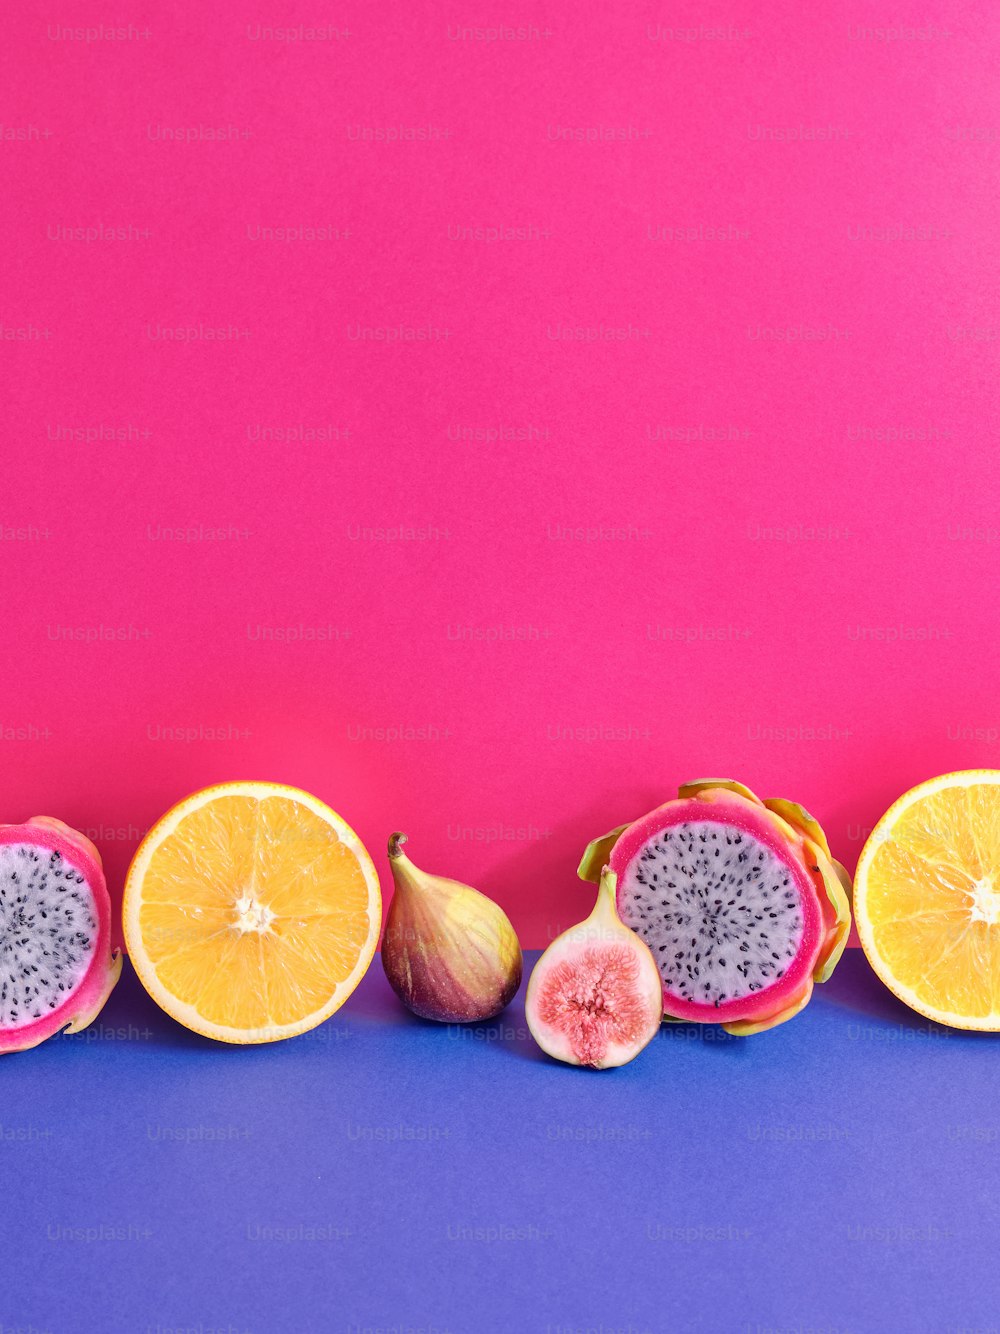 보라색과 분홍색 배경에 반으로 자른 과일 그룹